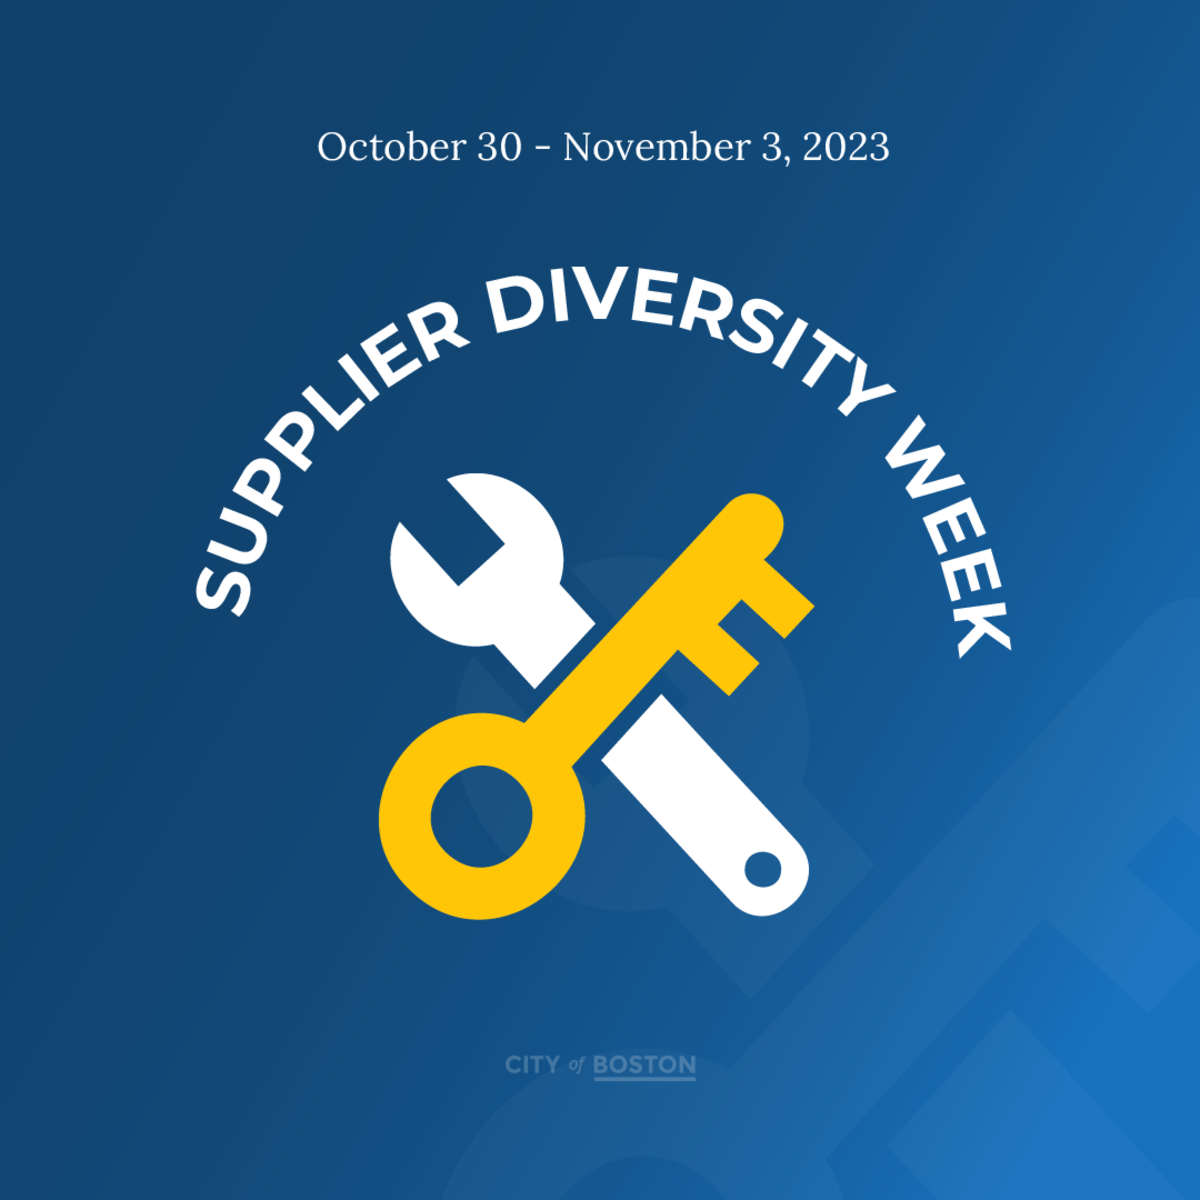 Supplier Diversity Week